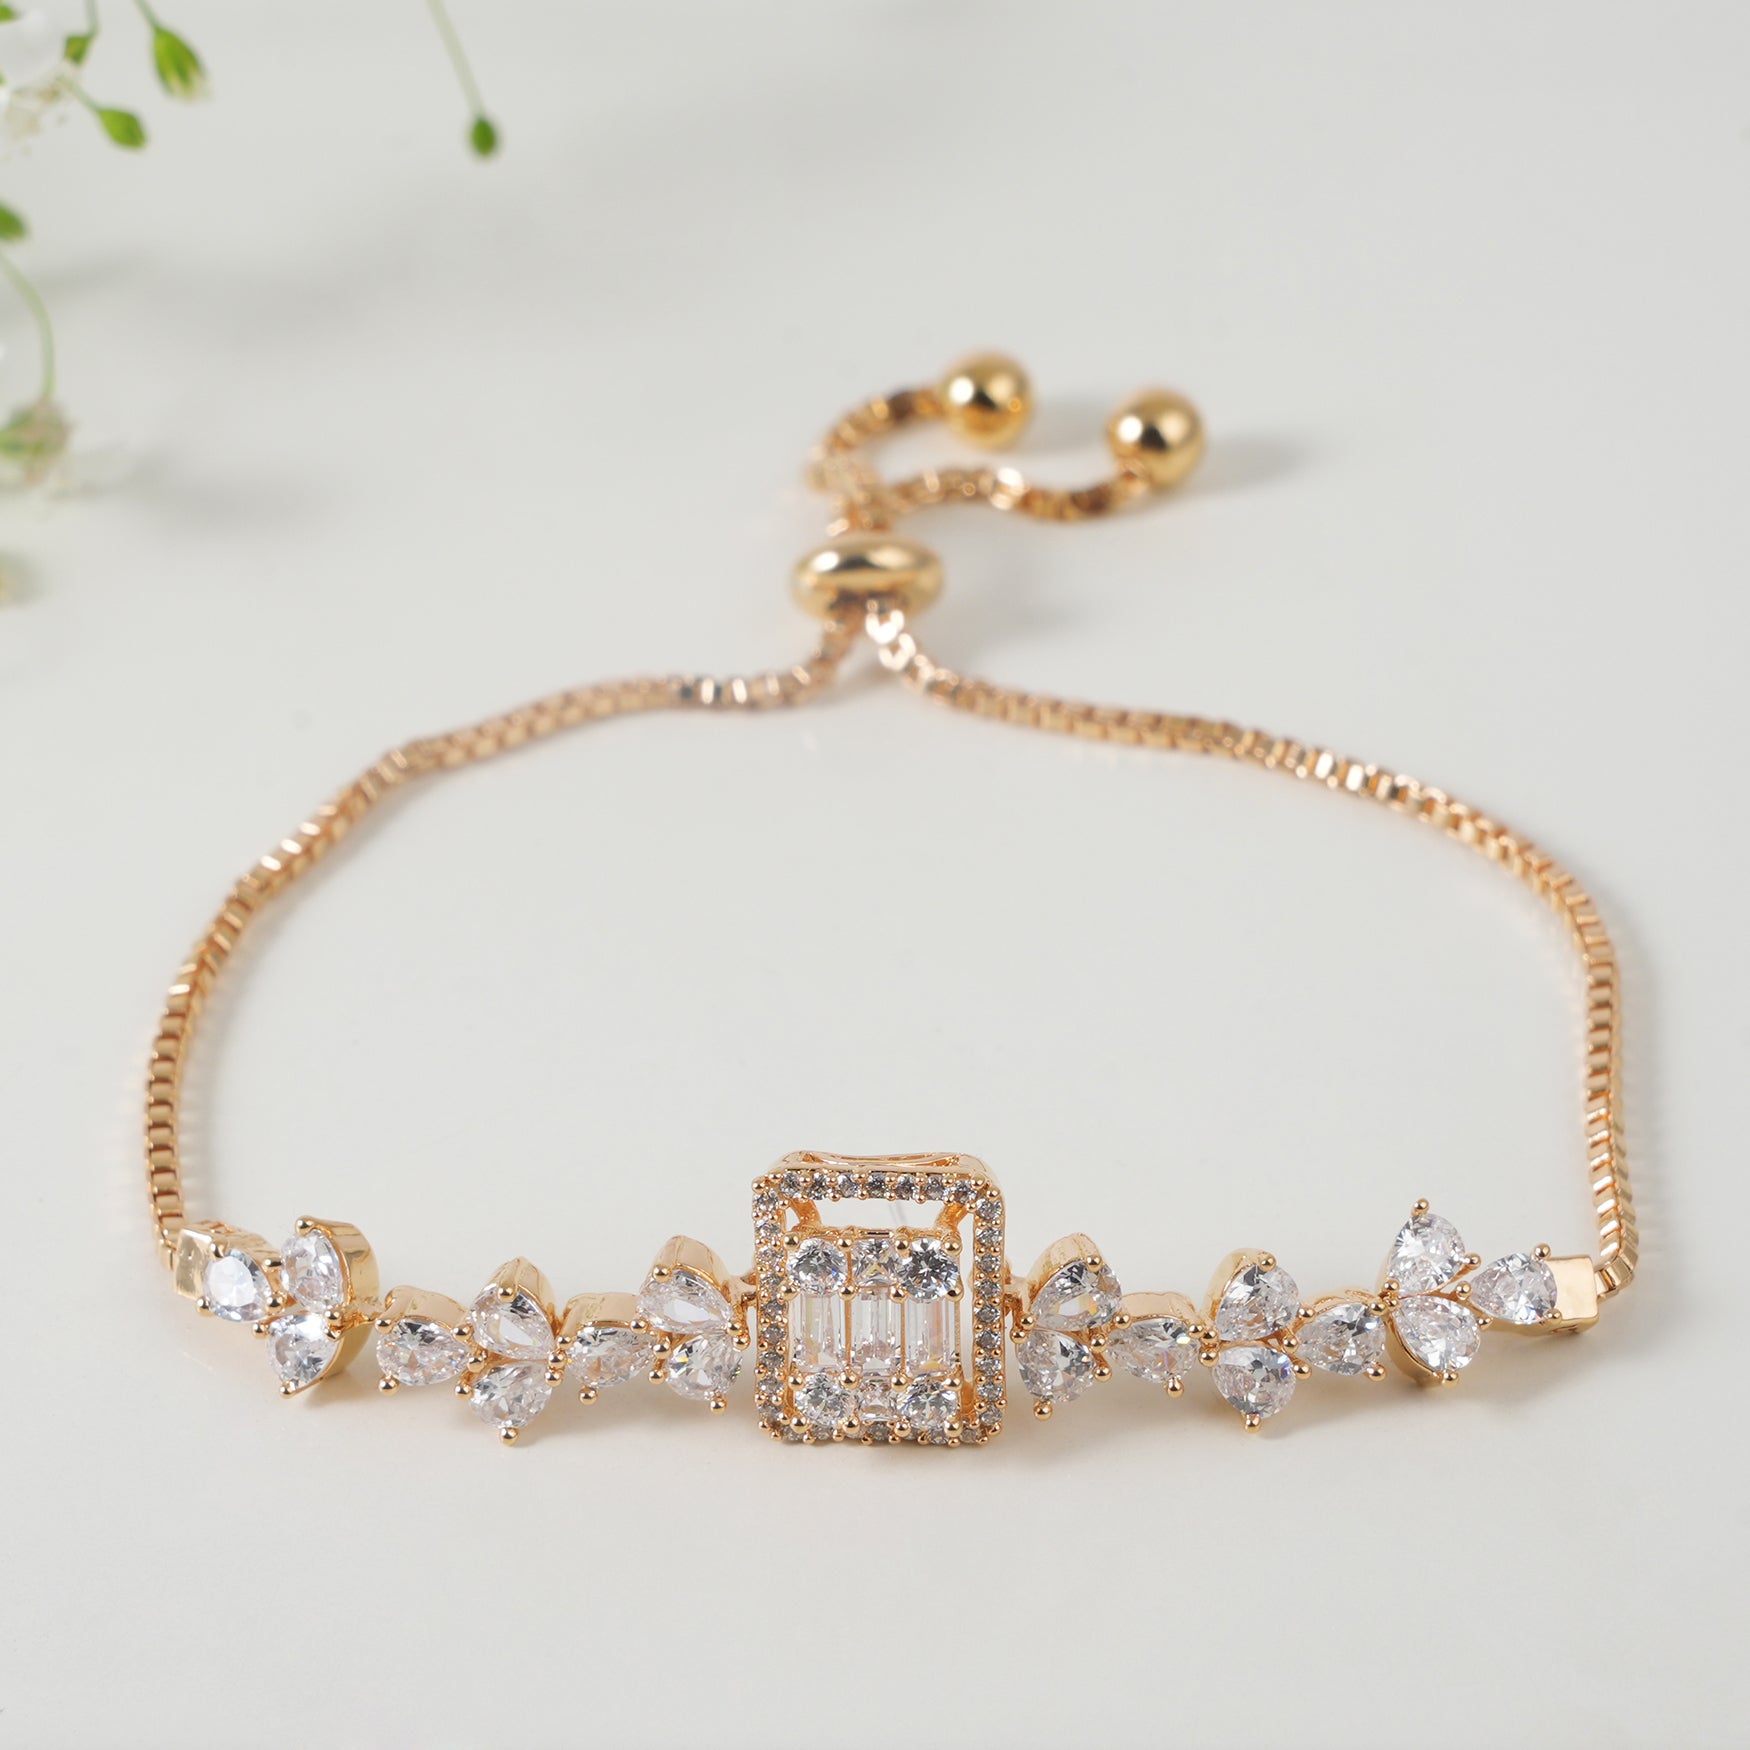 Stunning cz diamond bracelet for women